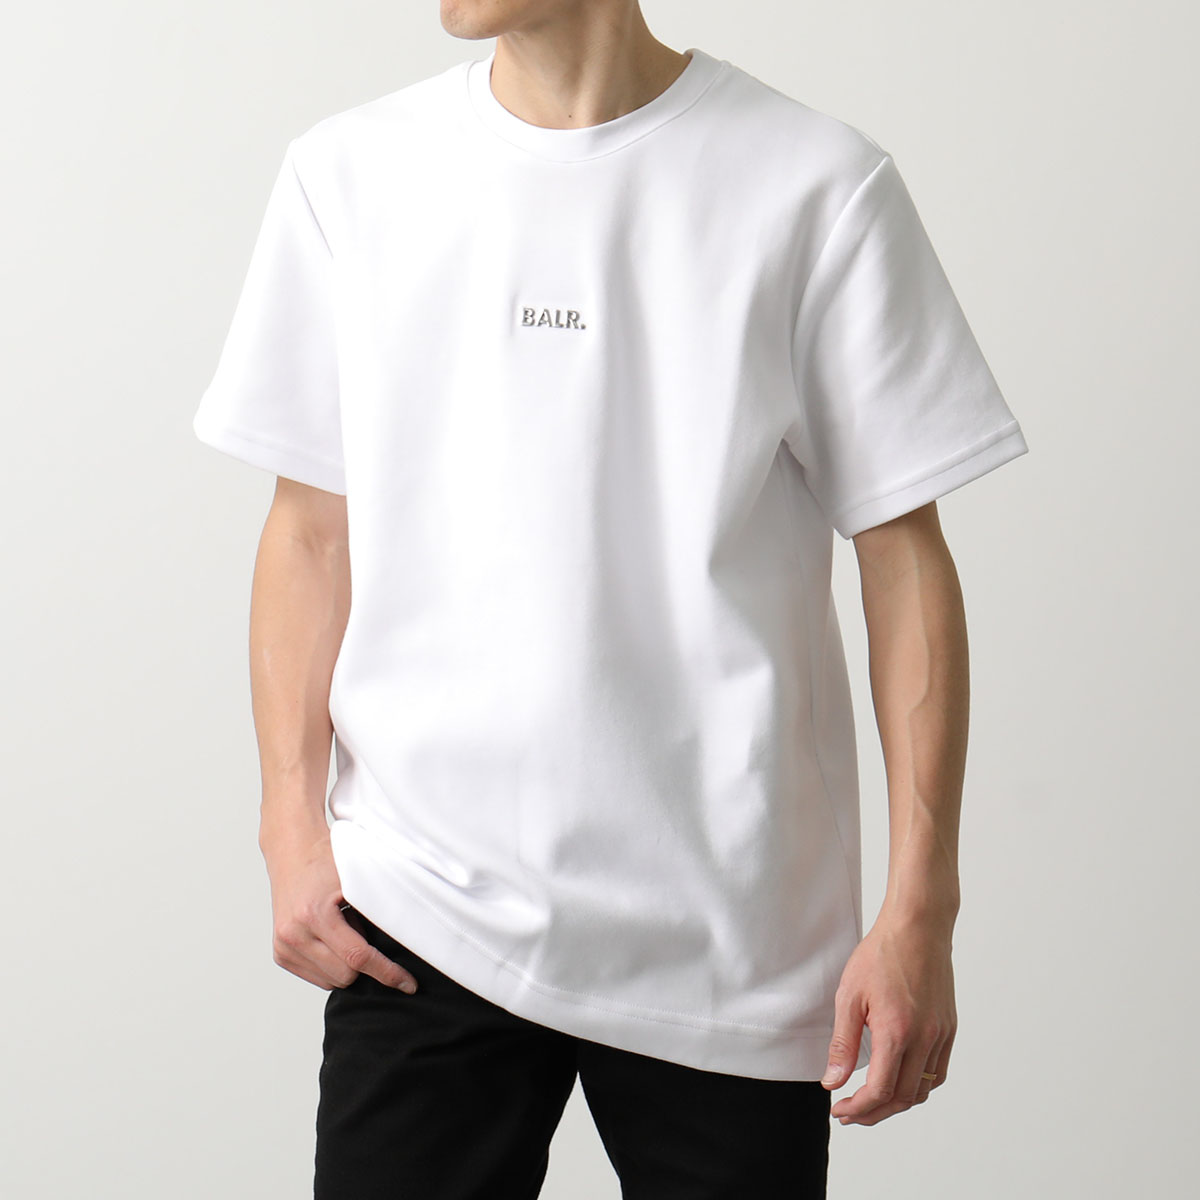 BALR. ボーラー 半袖 Tシャツ Q-Series Regular Fit T-Shirt B1112 1224 メンズ メタルロゴ コットン混紡  クルーネック カラー3色